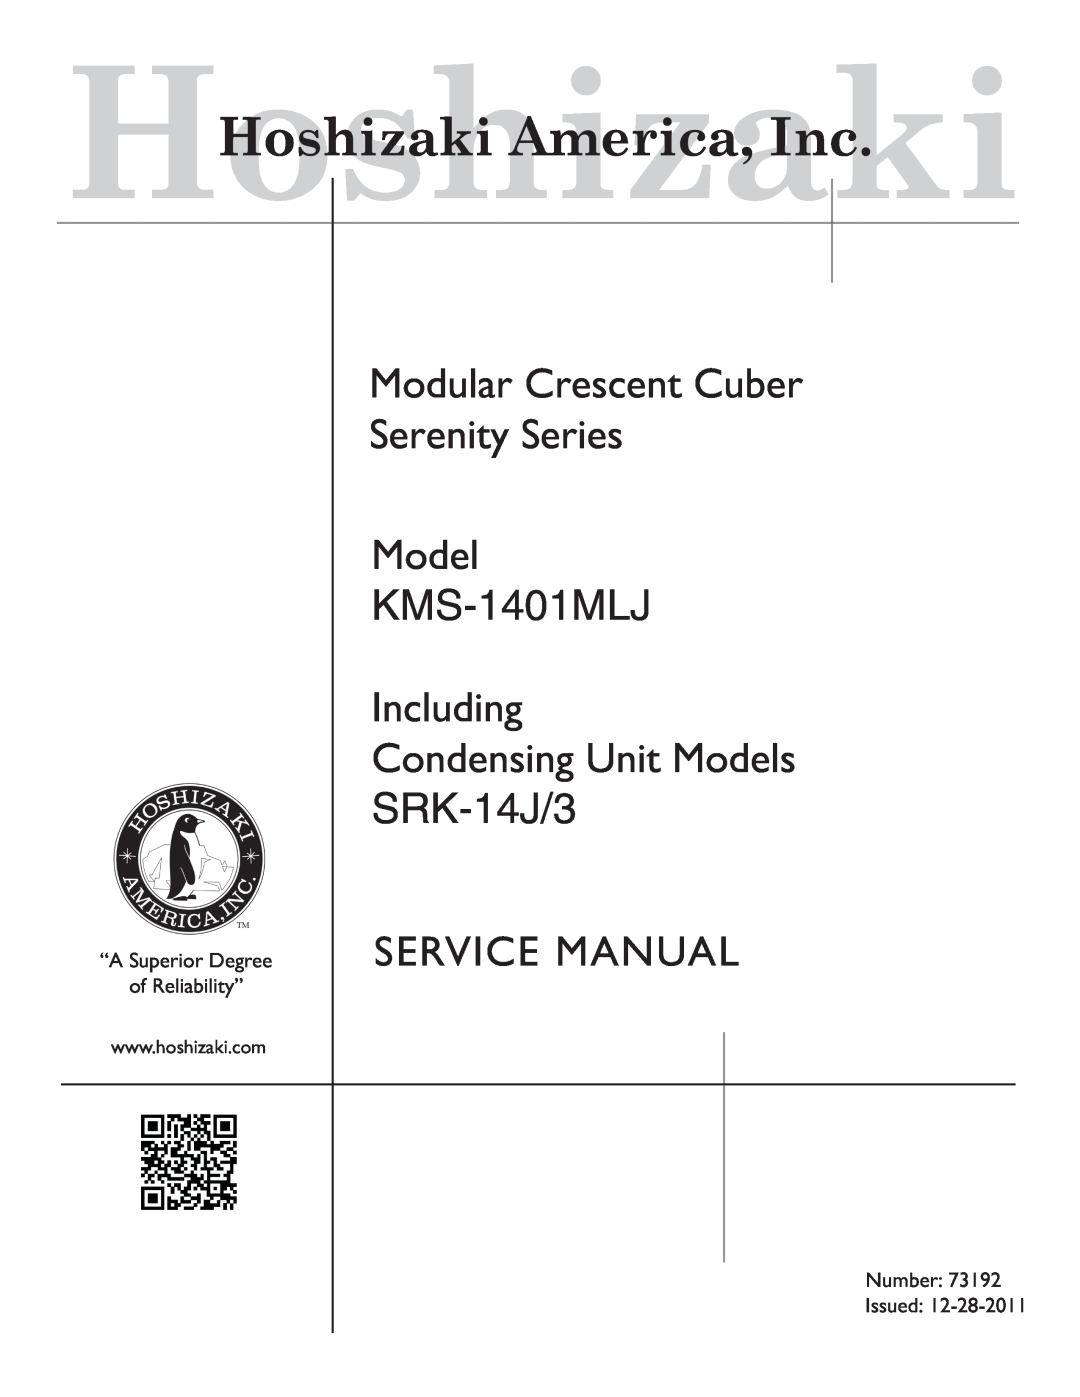 Hoshizaki Condensing Unit Models SRK-14J/3, KMS-1401MLJ service manual HoshizakiHoshizaki America, Inc 